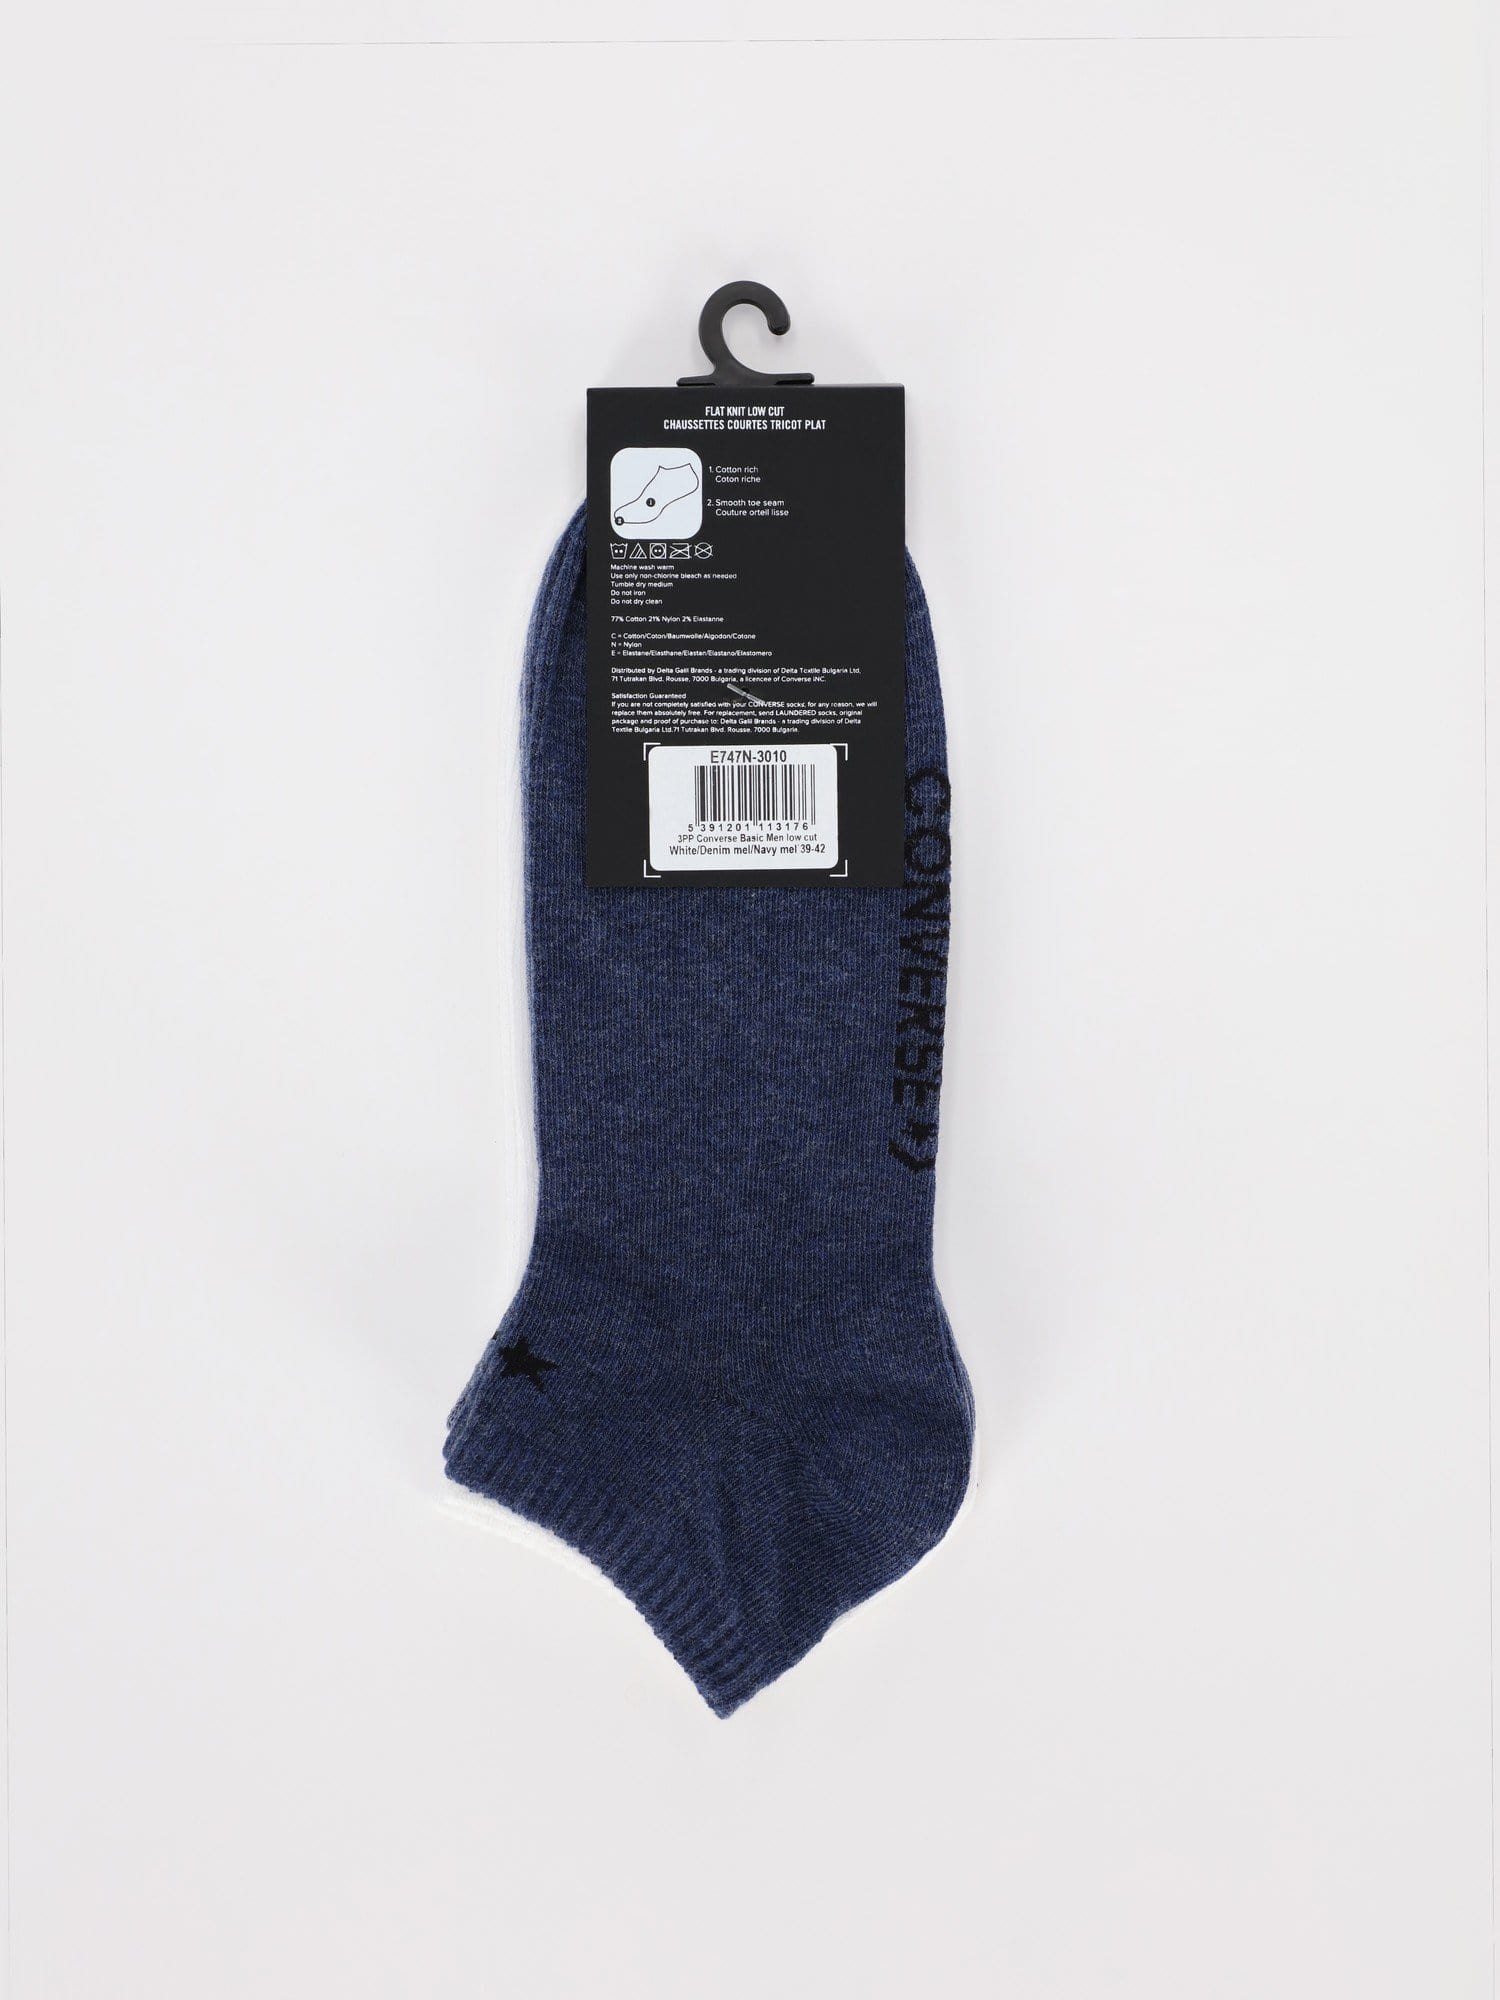 converse flat knit ultra low socks